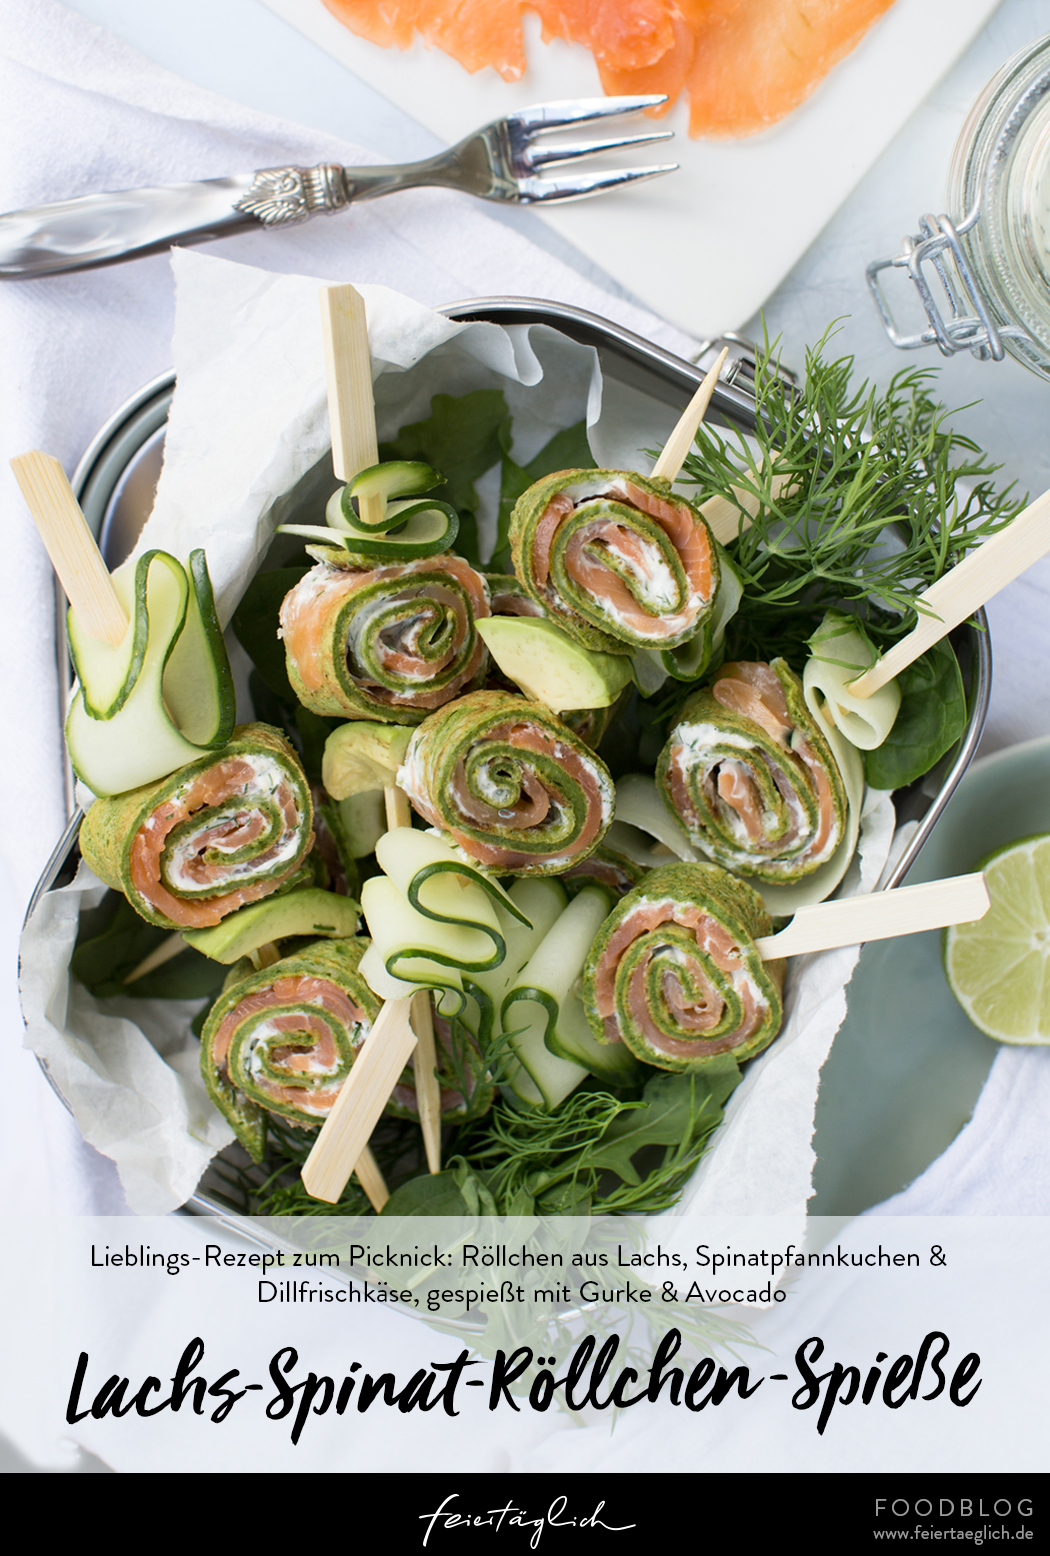 Picknickzeit: Rezept für Lachs-Spinat-Röllchen-Spieße mit Räucherlachs, Spinatpfannkuchen & Dillfrischkäsecreme gespießt mit Gurke und Avocado